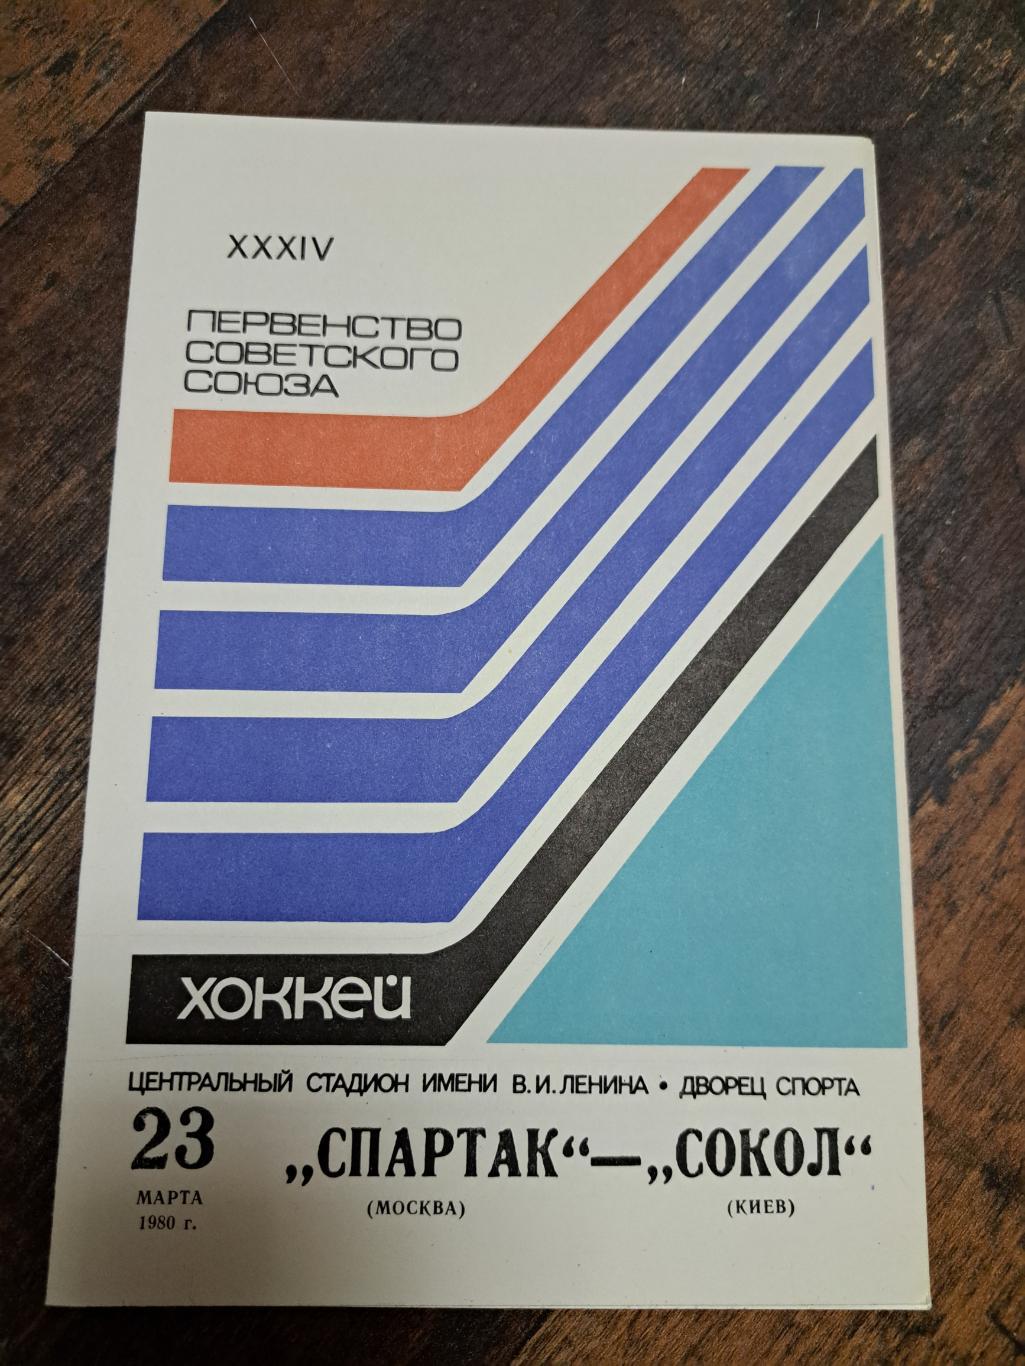 Спартак Москва - Сокол 23.03.1980 отличное состояние!